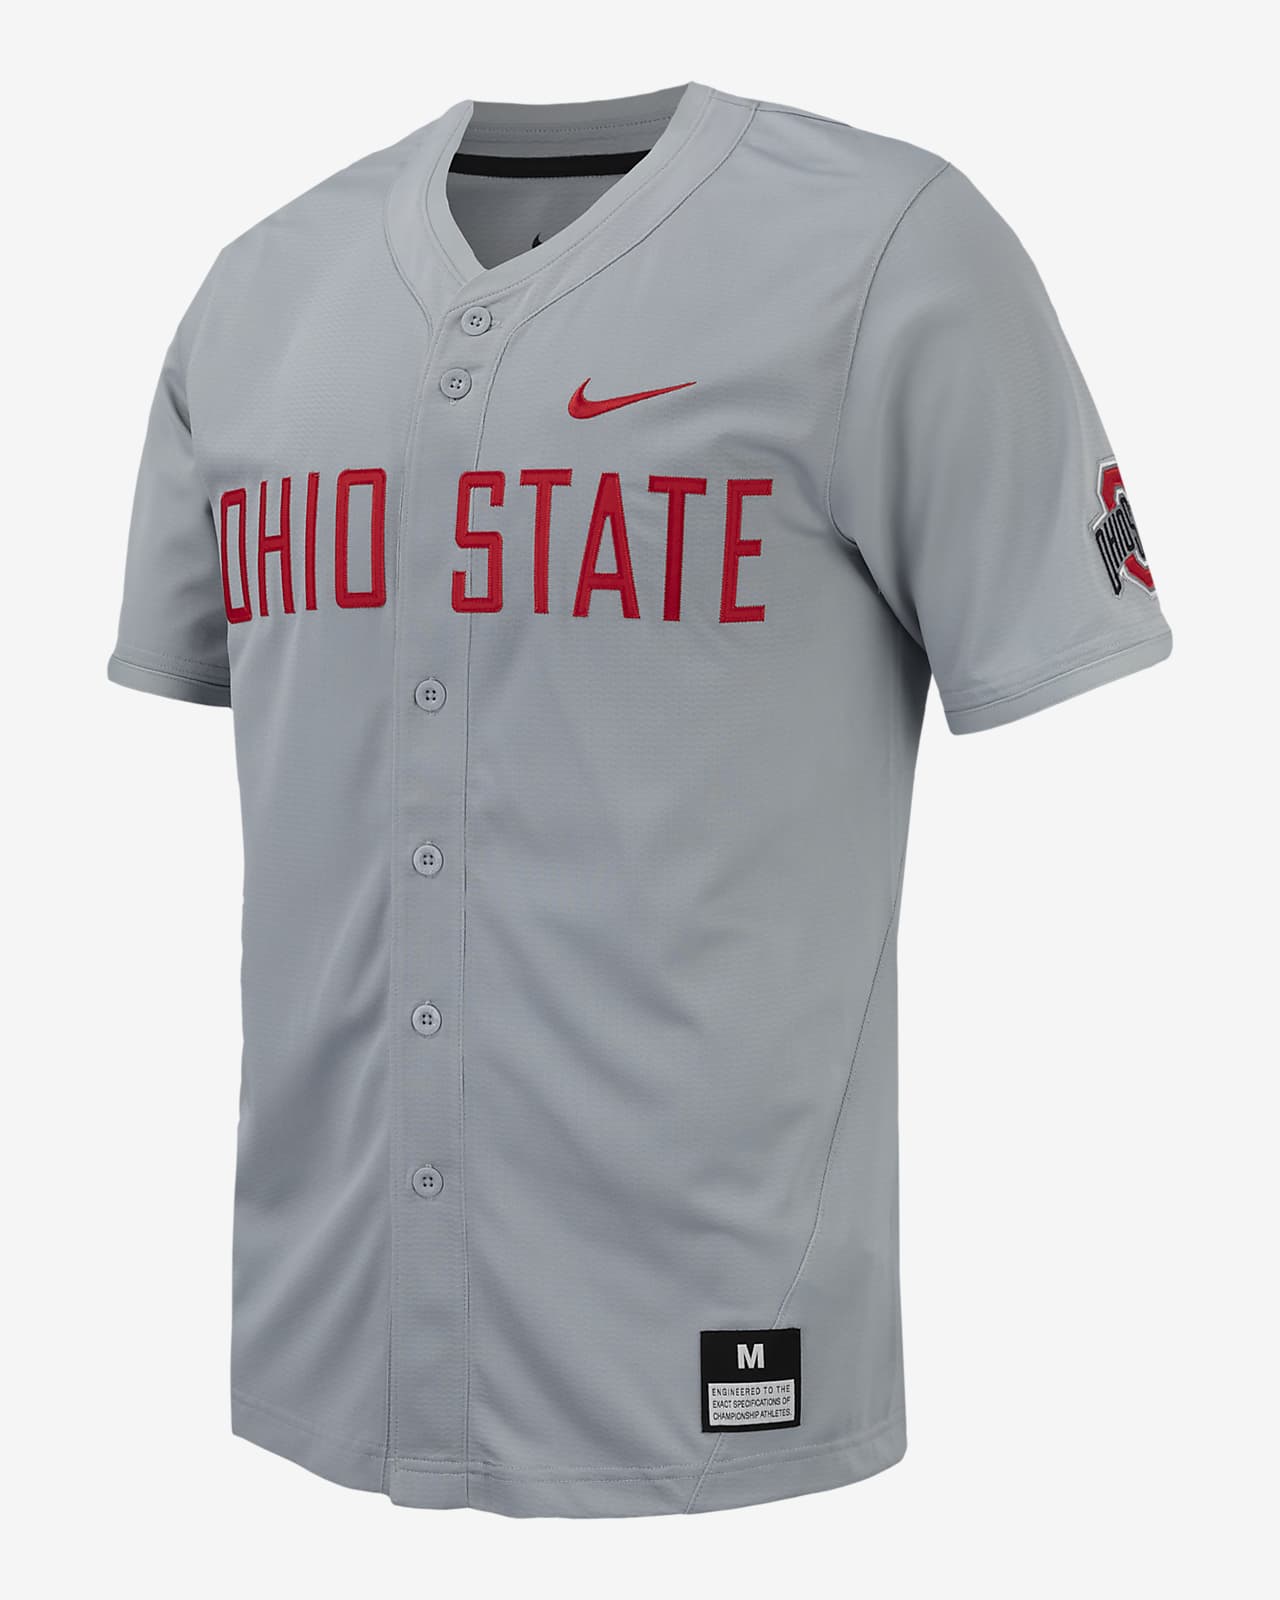 Ohio State Men's Nike College Replica Baseball Jersey